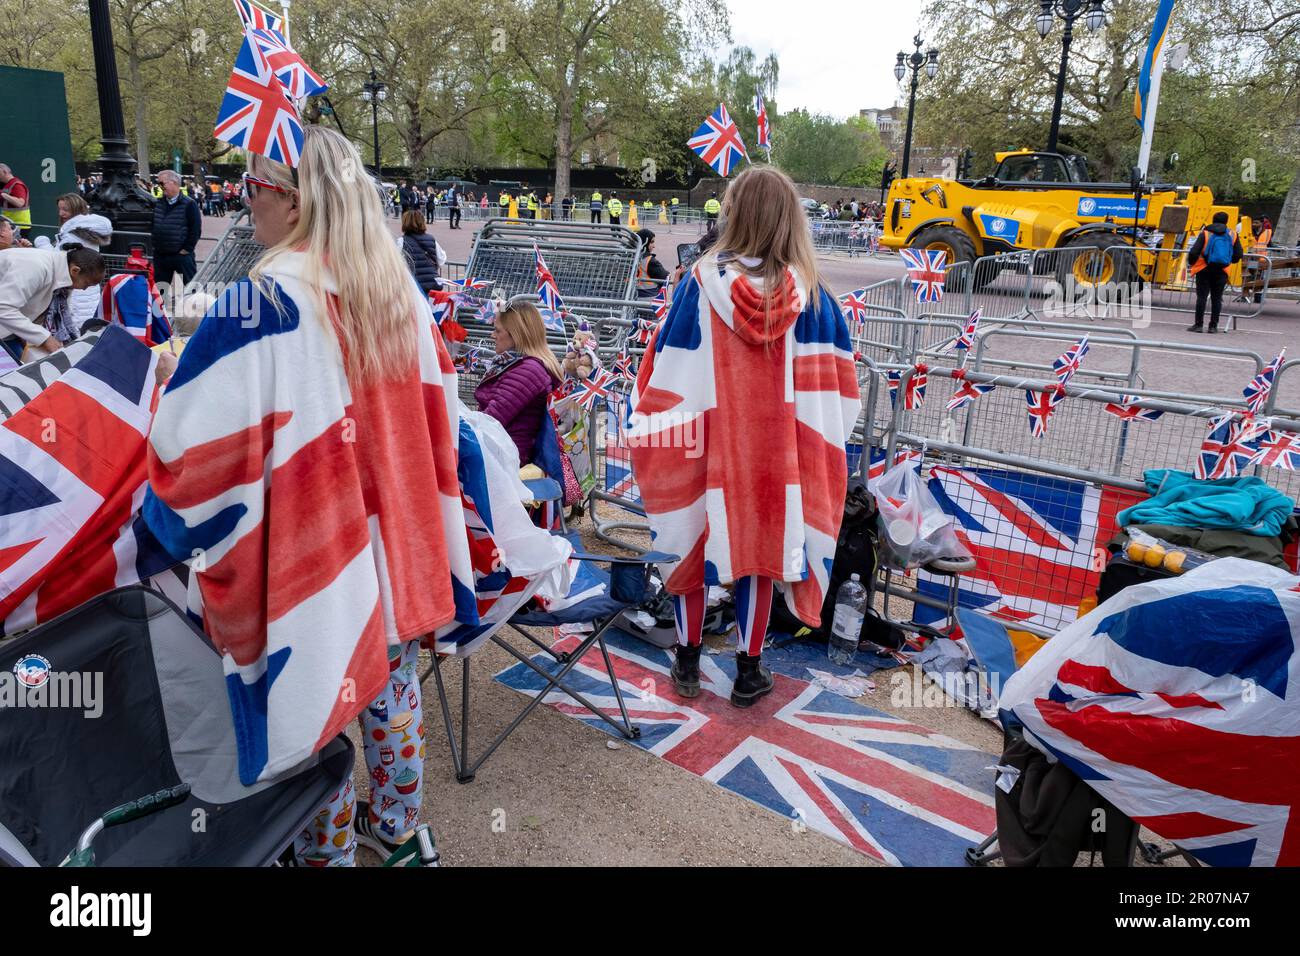 Menschen, Royalisten und königliche Fans versammeln sich entlang der Mall, um die Krönung von König Karl III. Am 5. Mai 2023 in London, Großbritannien, vorzubereiten. Viele sind bereit, über Nacht zu zelten und tragen zur Feier rot-weiß und blau die Flagge der Union, bevor König Karl III. Zum König von England gekrönt wird. Stockfoto